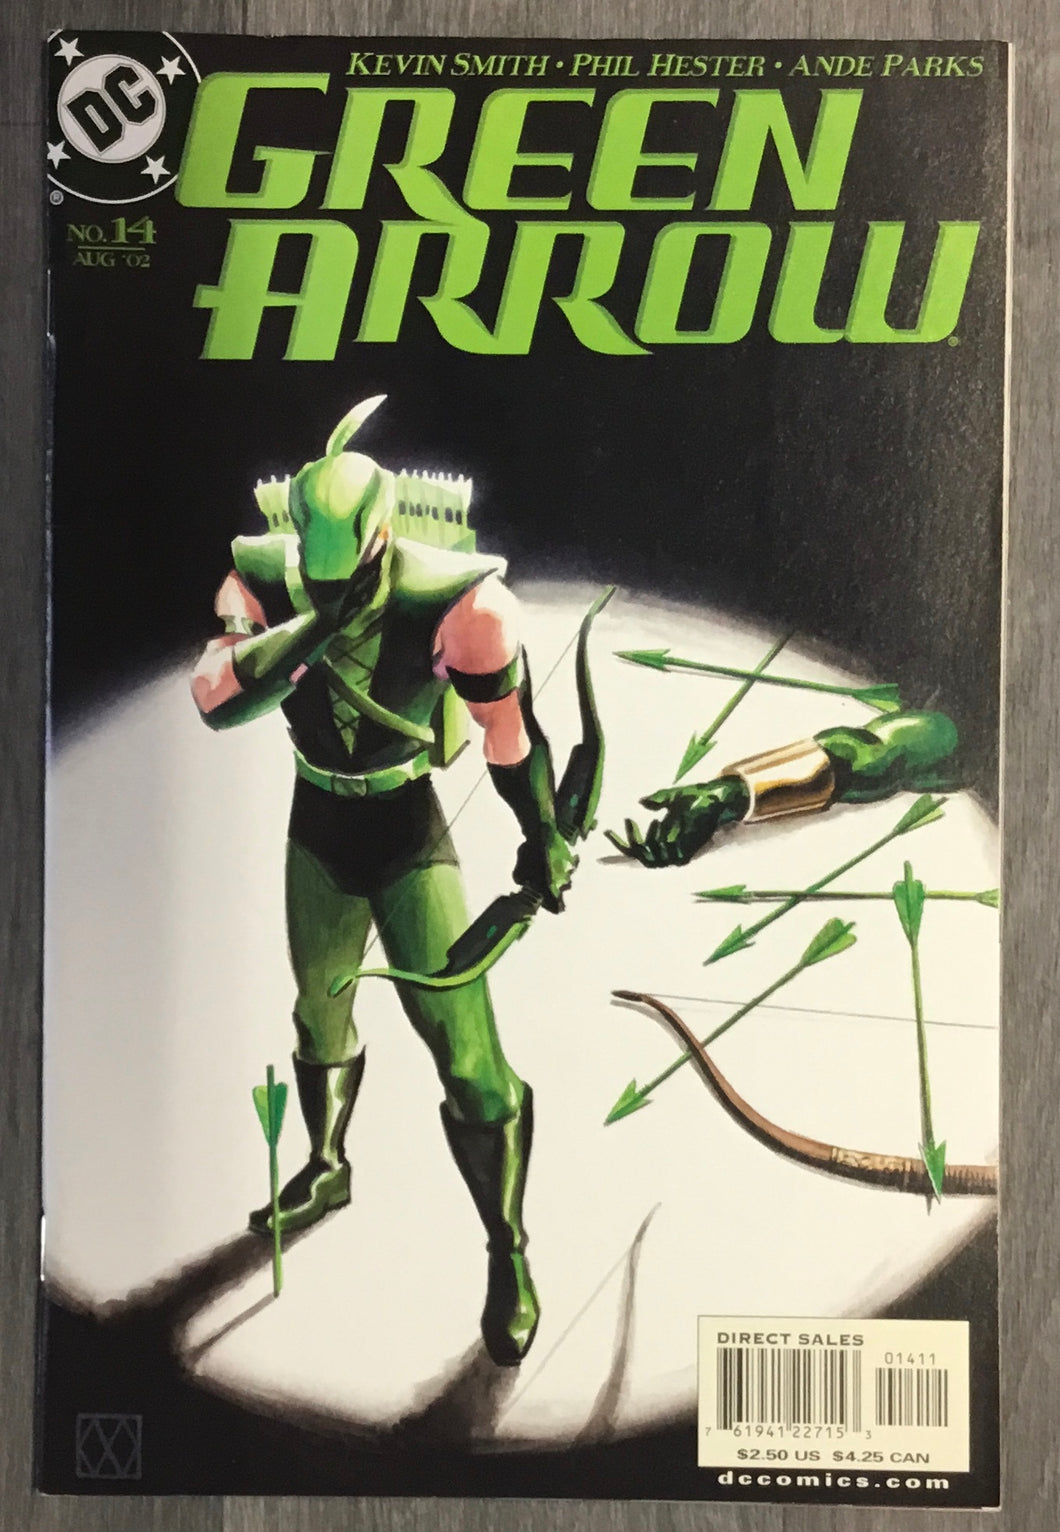 Green Arrow No. #14 2002 DC Comics